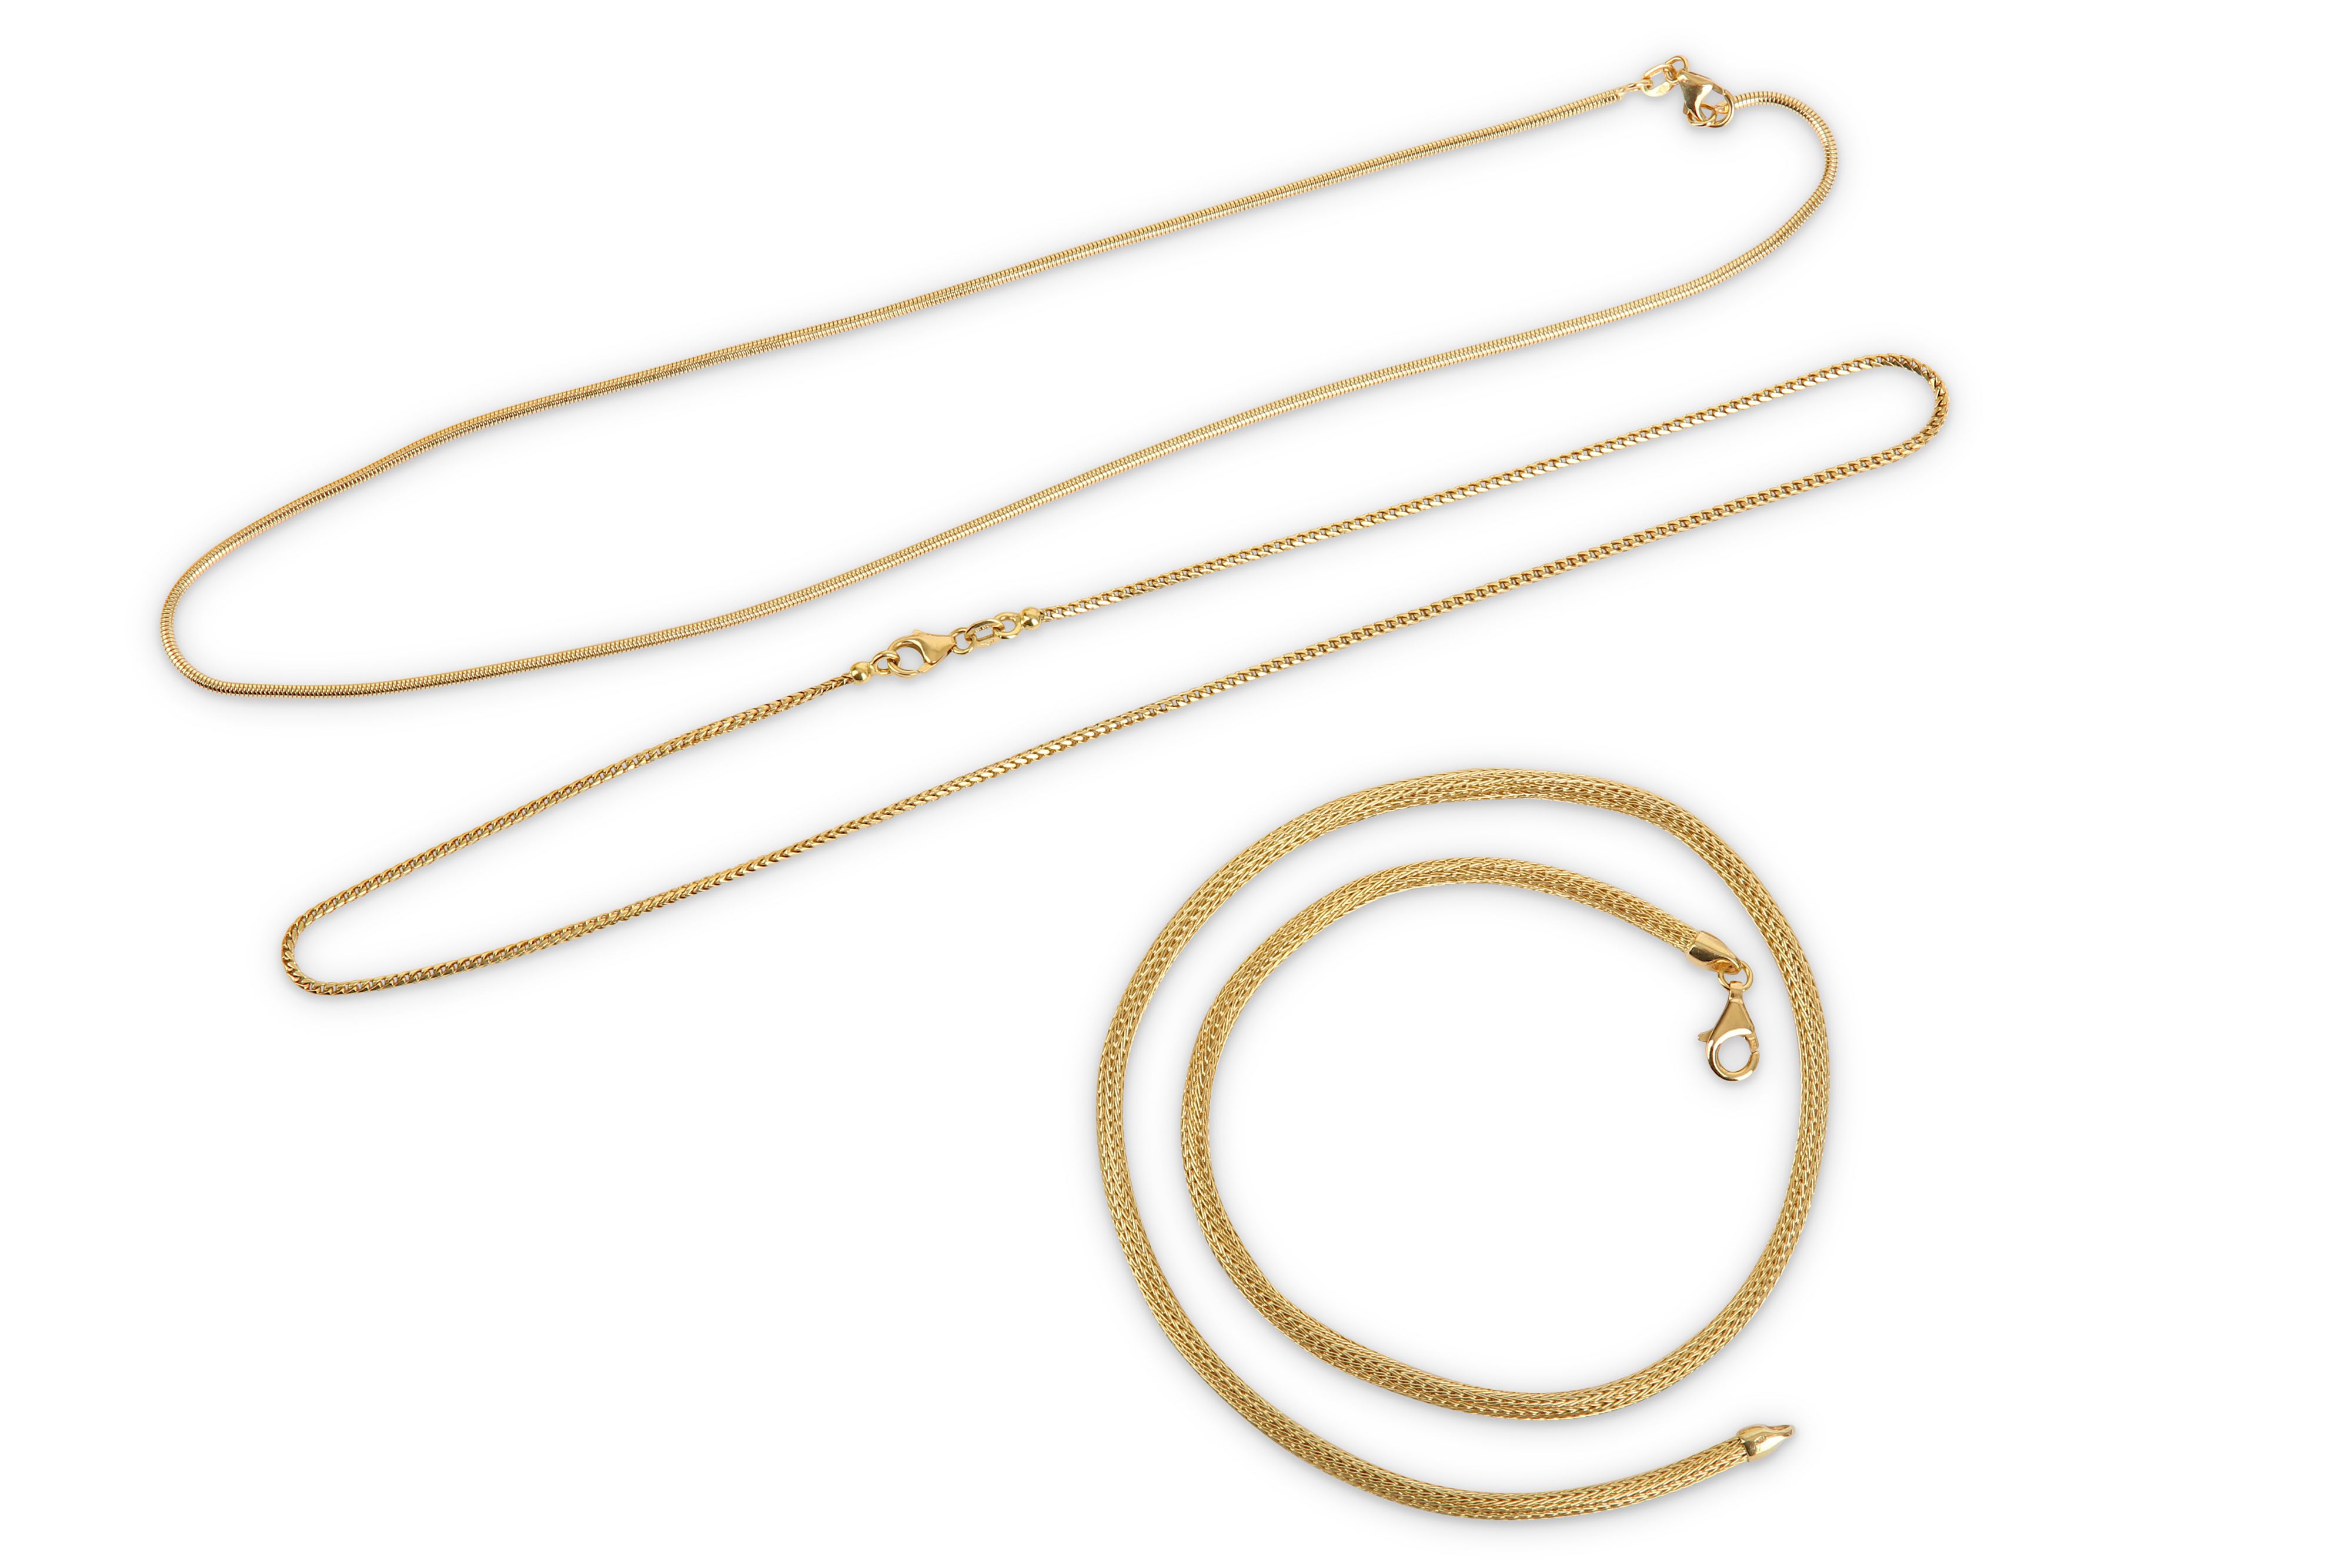 Three fancy-link necklaces